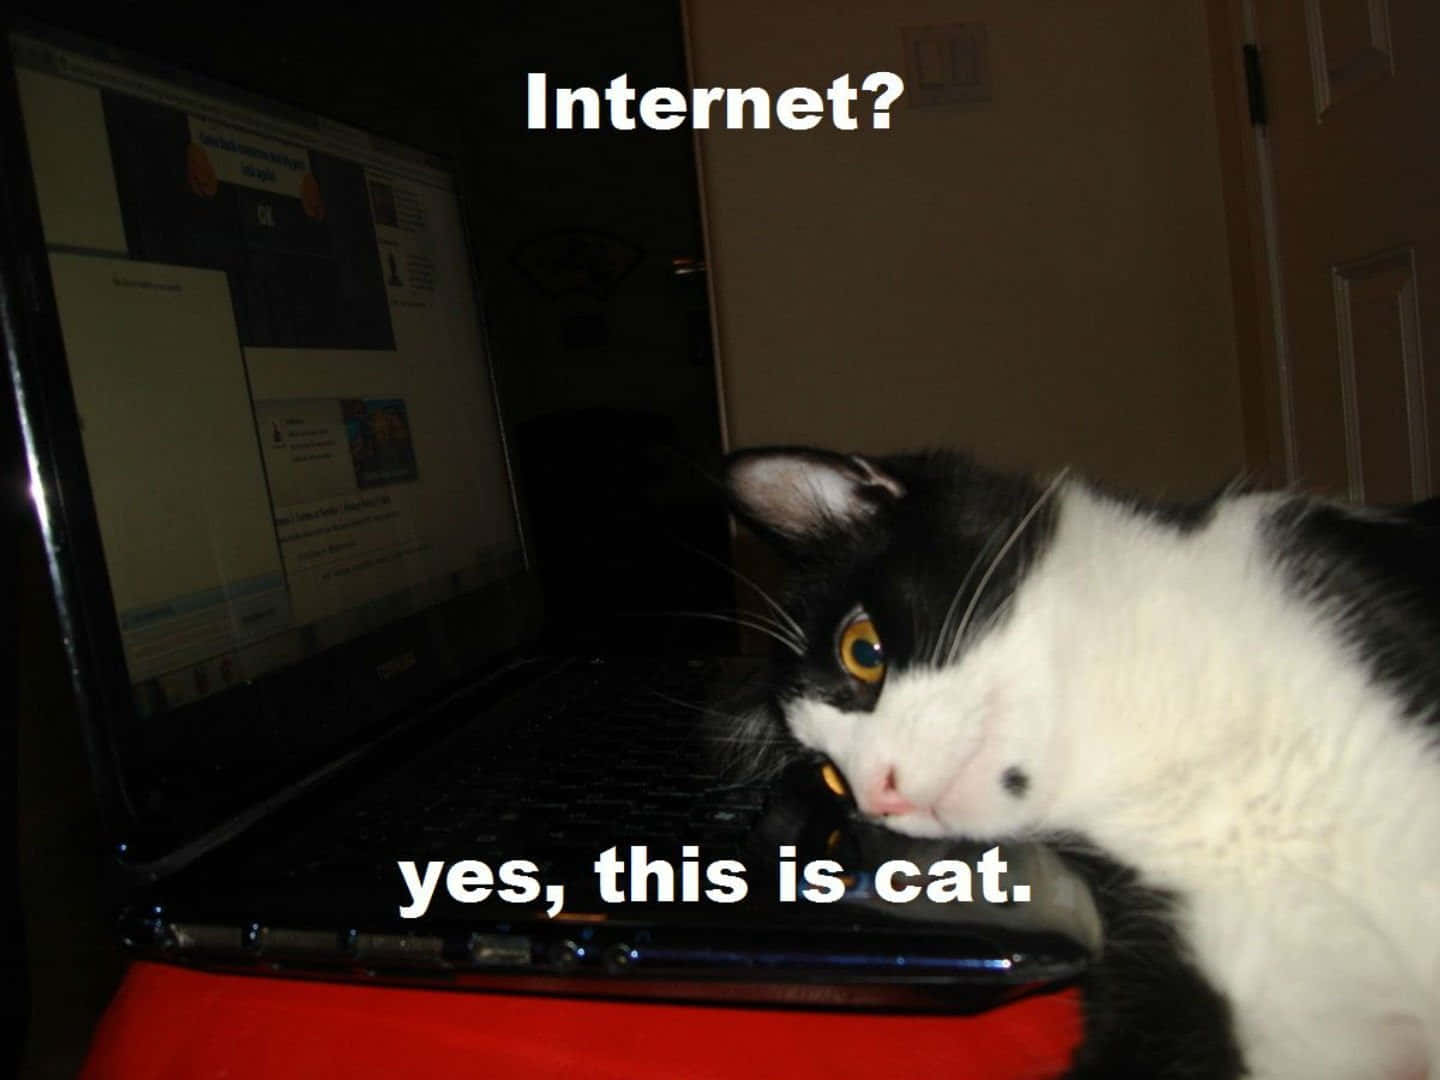 Cursed Cat Picture Internet Meme